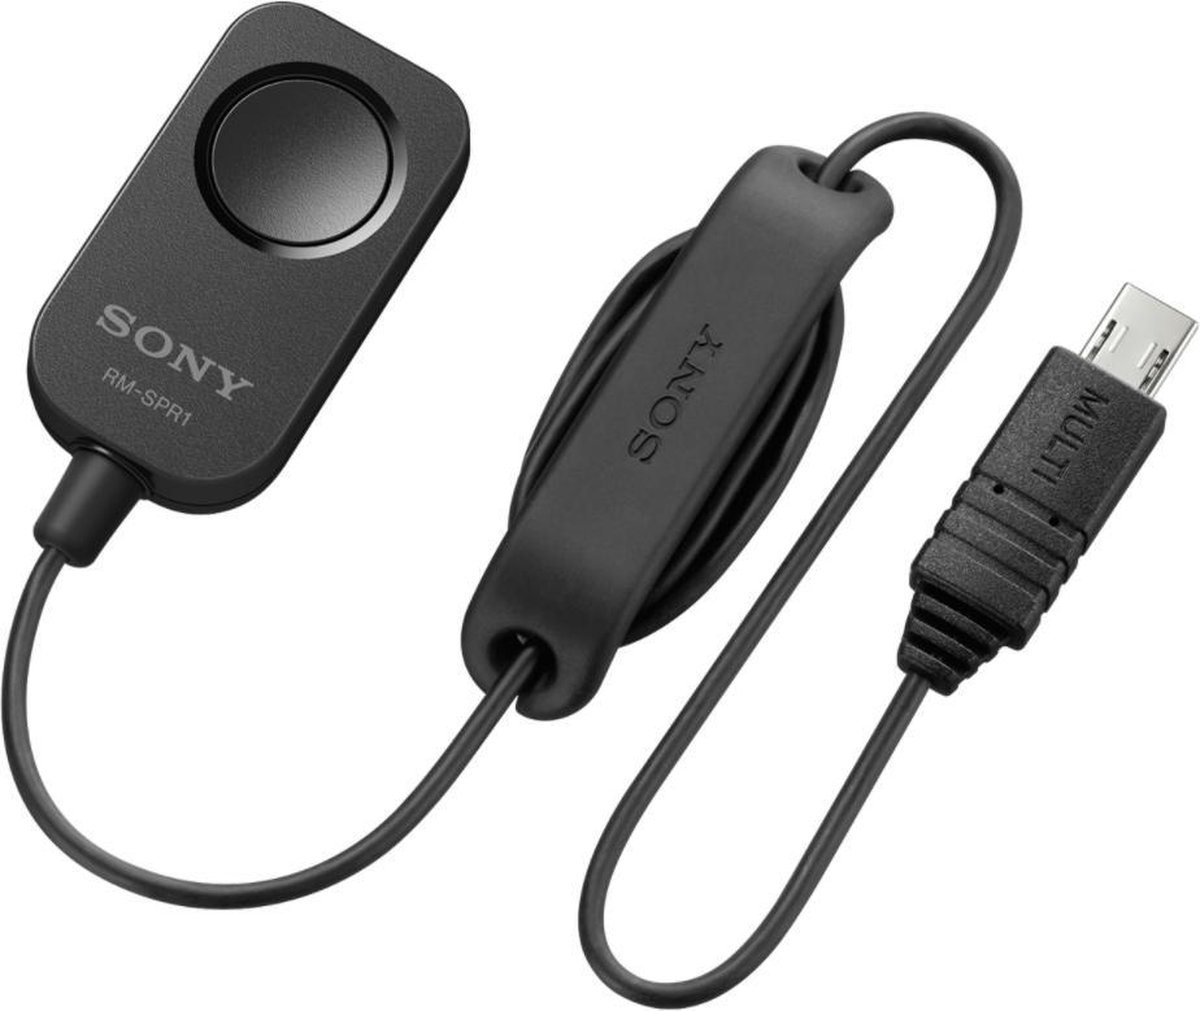 Sony RM-SPR1 - Sony